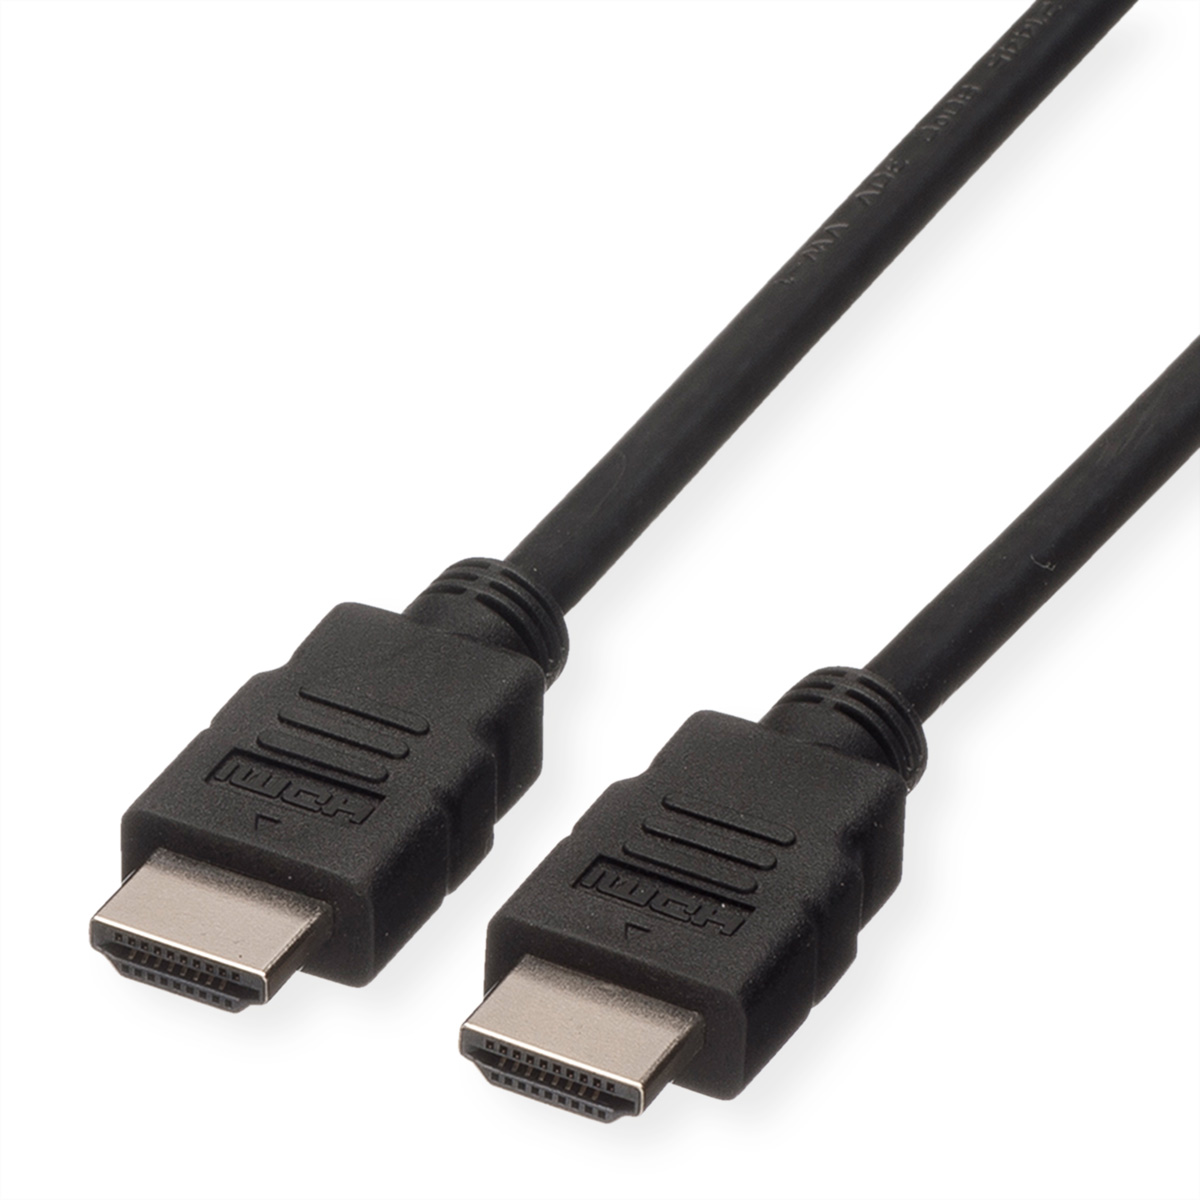 ROLINE HDMI High Speed Kabel mit Ethernet, LSOH, schwarz, 5 m